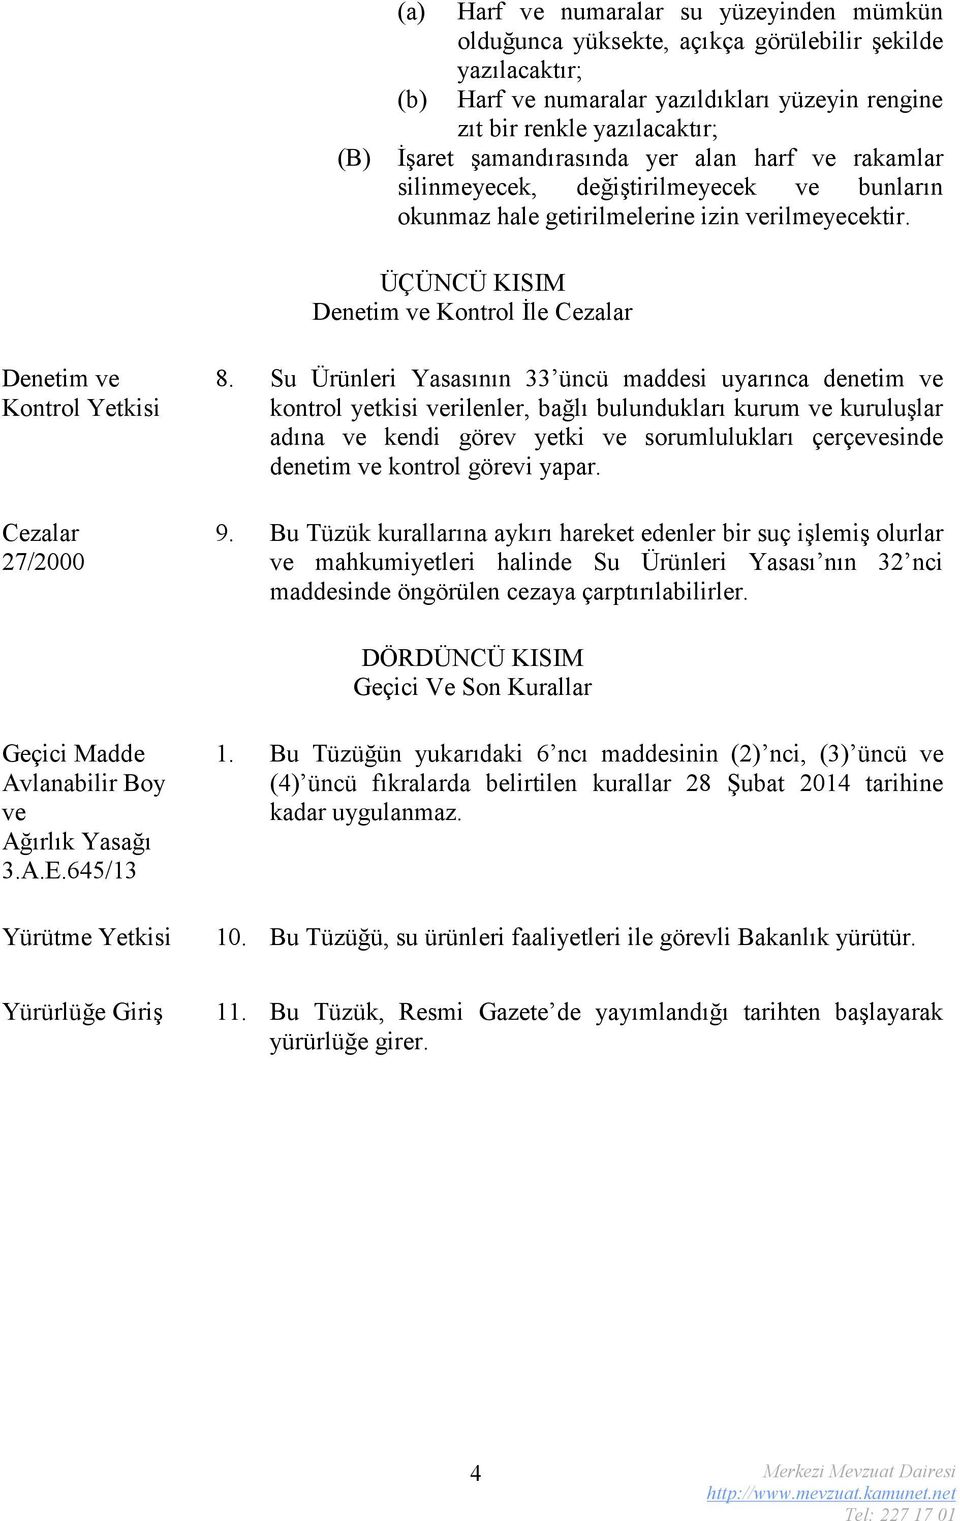 ÜÇÜNCÜ KISIM Denetim ve Kontrol İle Cezalar Denetim ve Kontrol Yetkisi Cezalar 27/2000 8.